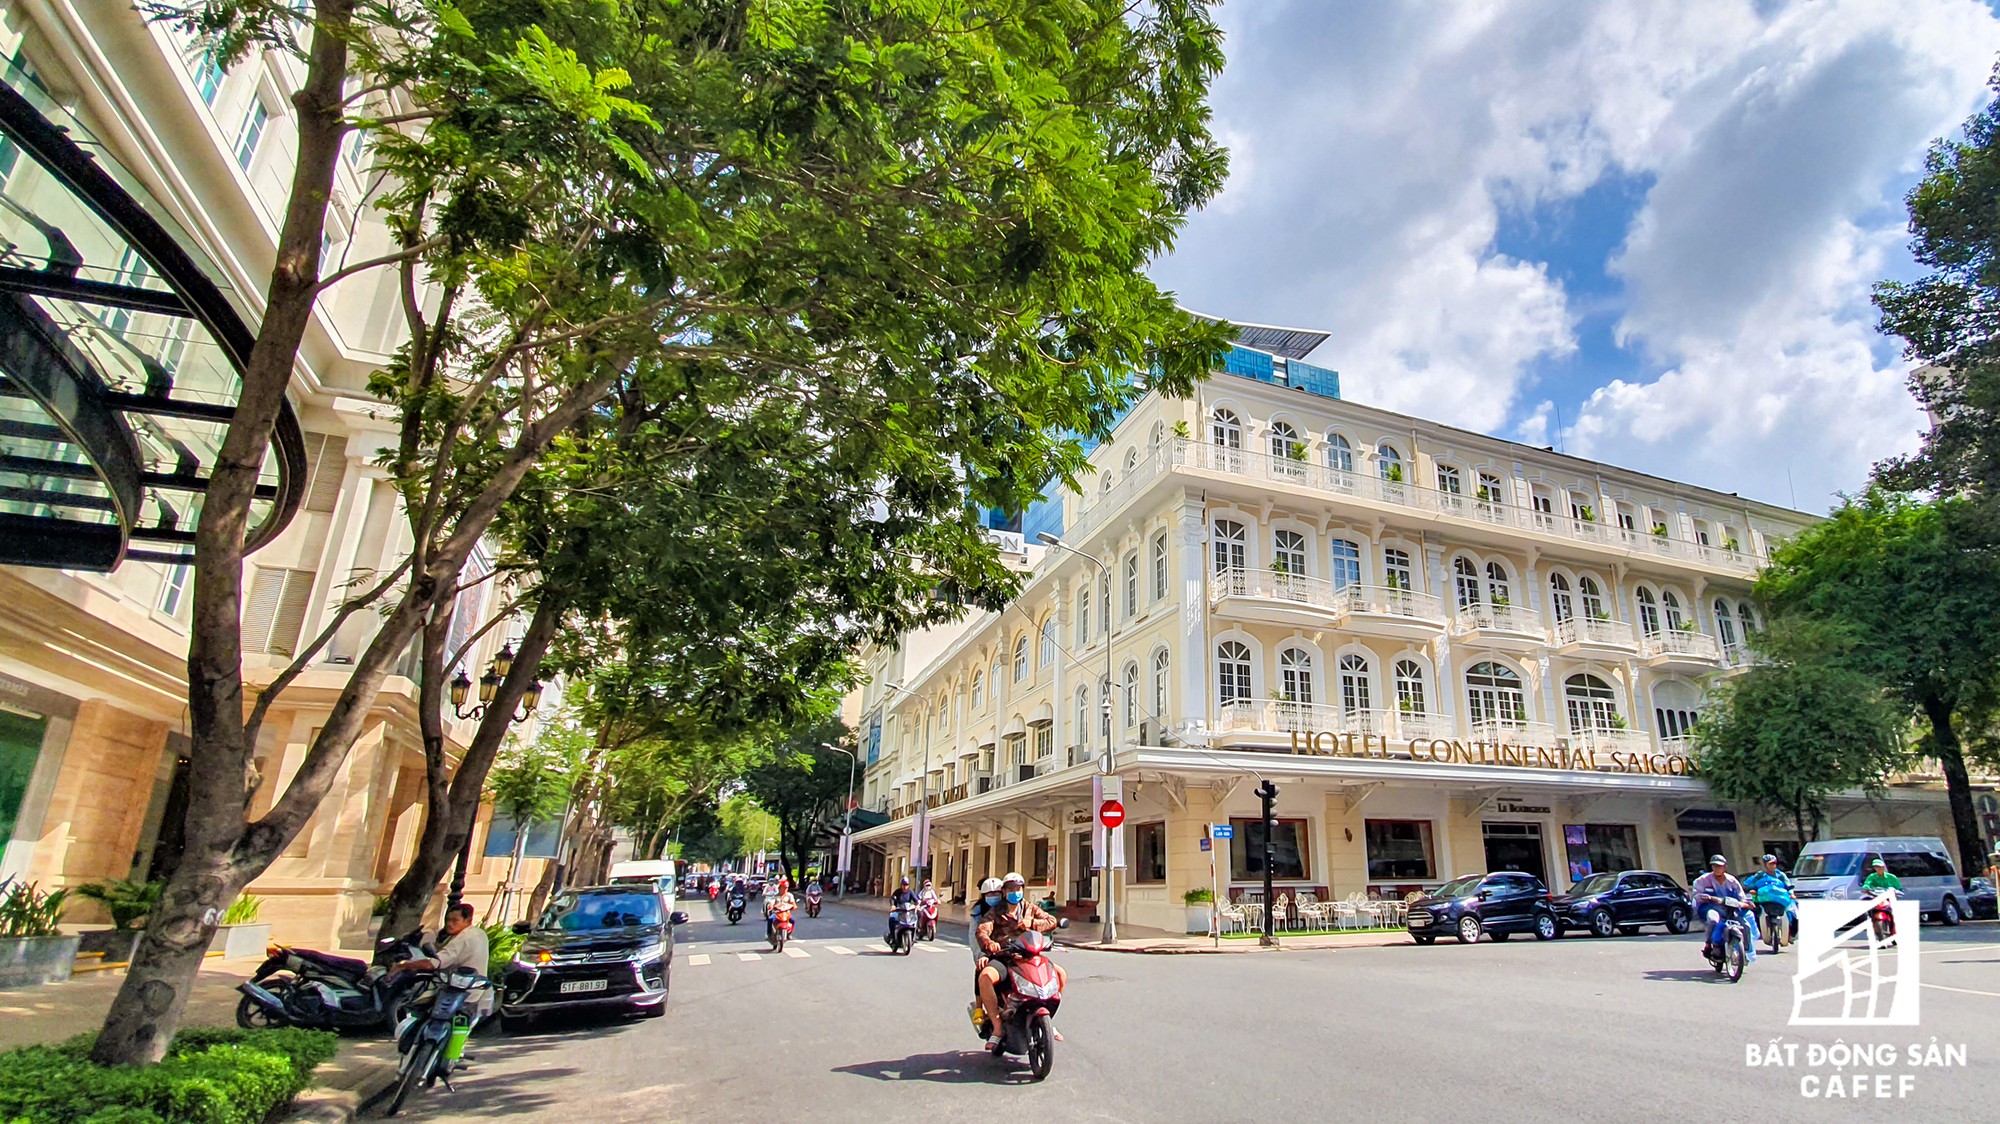 Toàn cảnh con đường có giá bất động sản đắt đỏ nhất Việt Nam, lên tới 2 tỷ đồng một m2 - Ảnh 16.